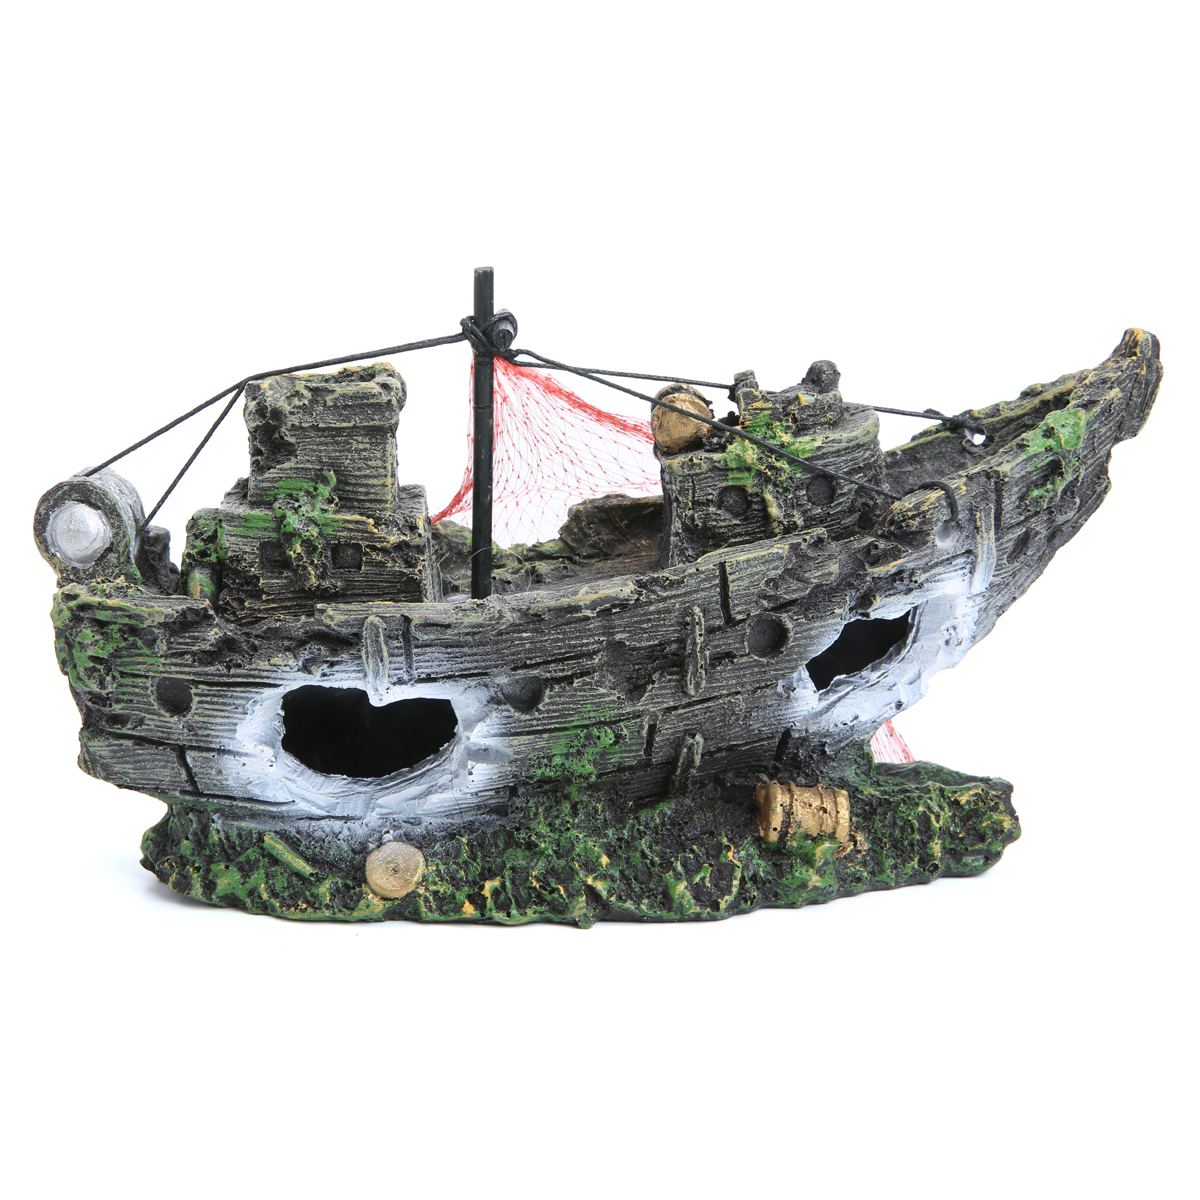 

Аквариум Орнамент крушение Парусные лодки Затонувший корабль Разрушитель Fish Tank Пещера Декор Модель